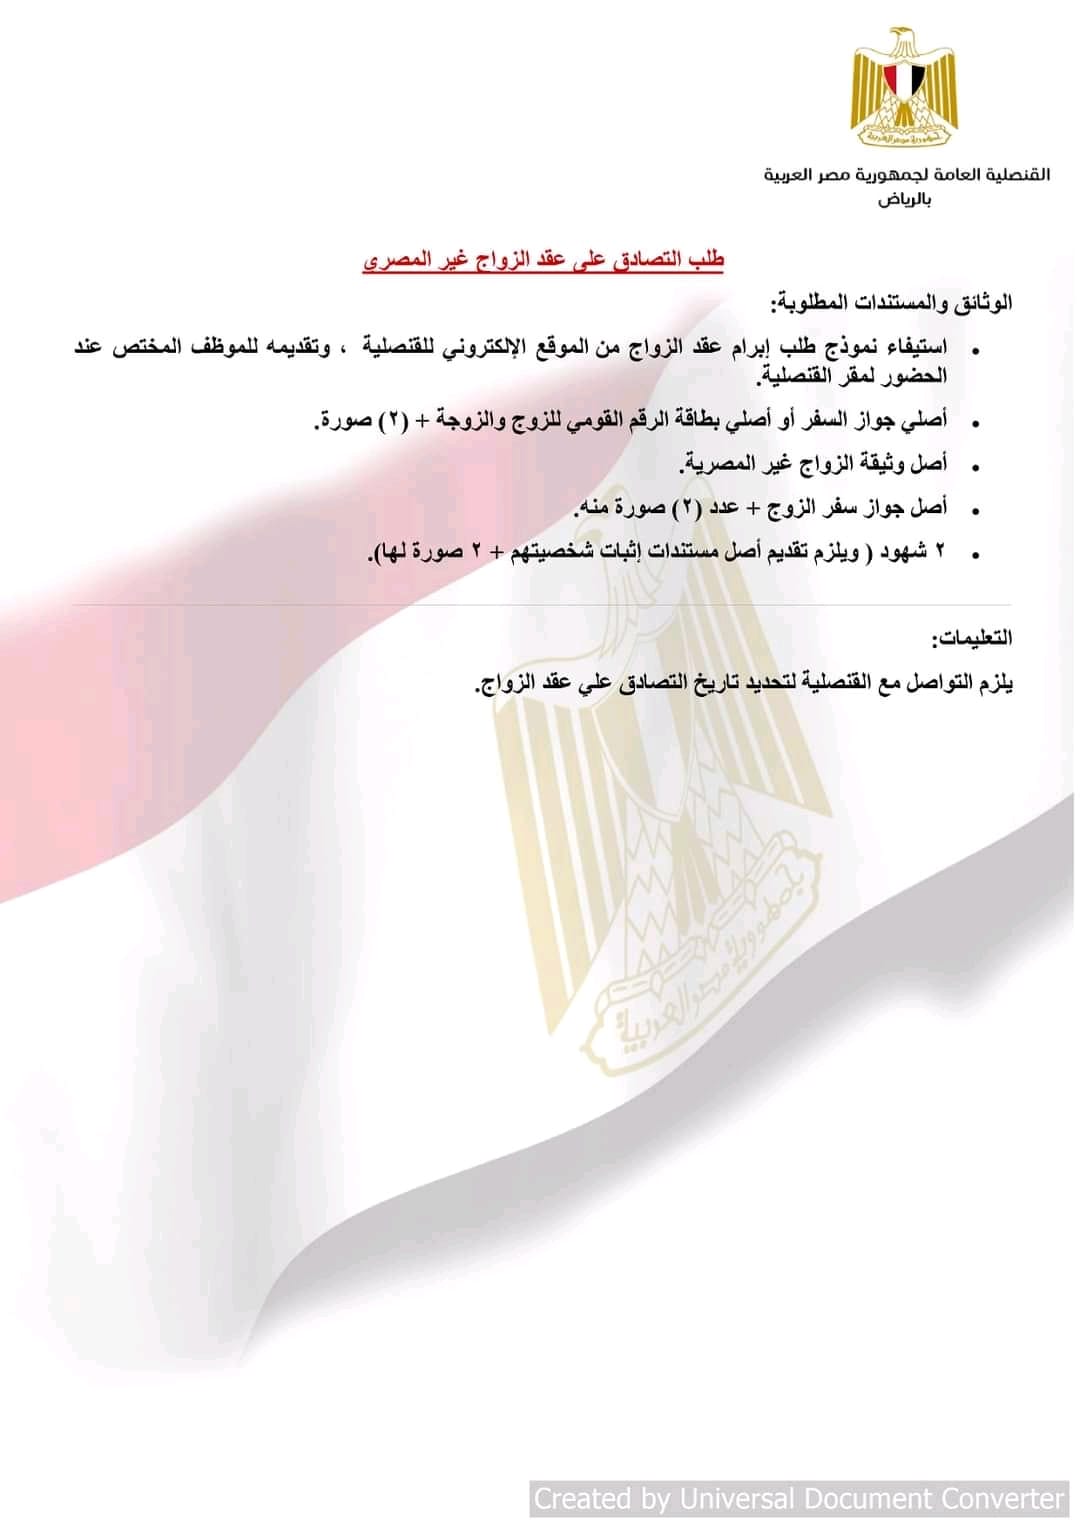  قنصلية مصر بالرياض تنشر الأوراق المطلوبة لإتمام المعاملات القنصلية 